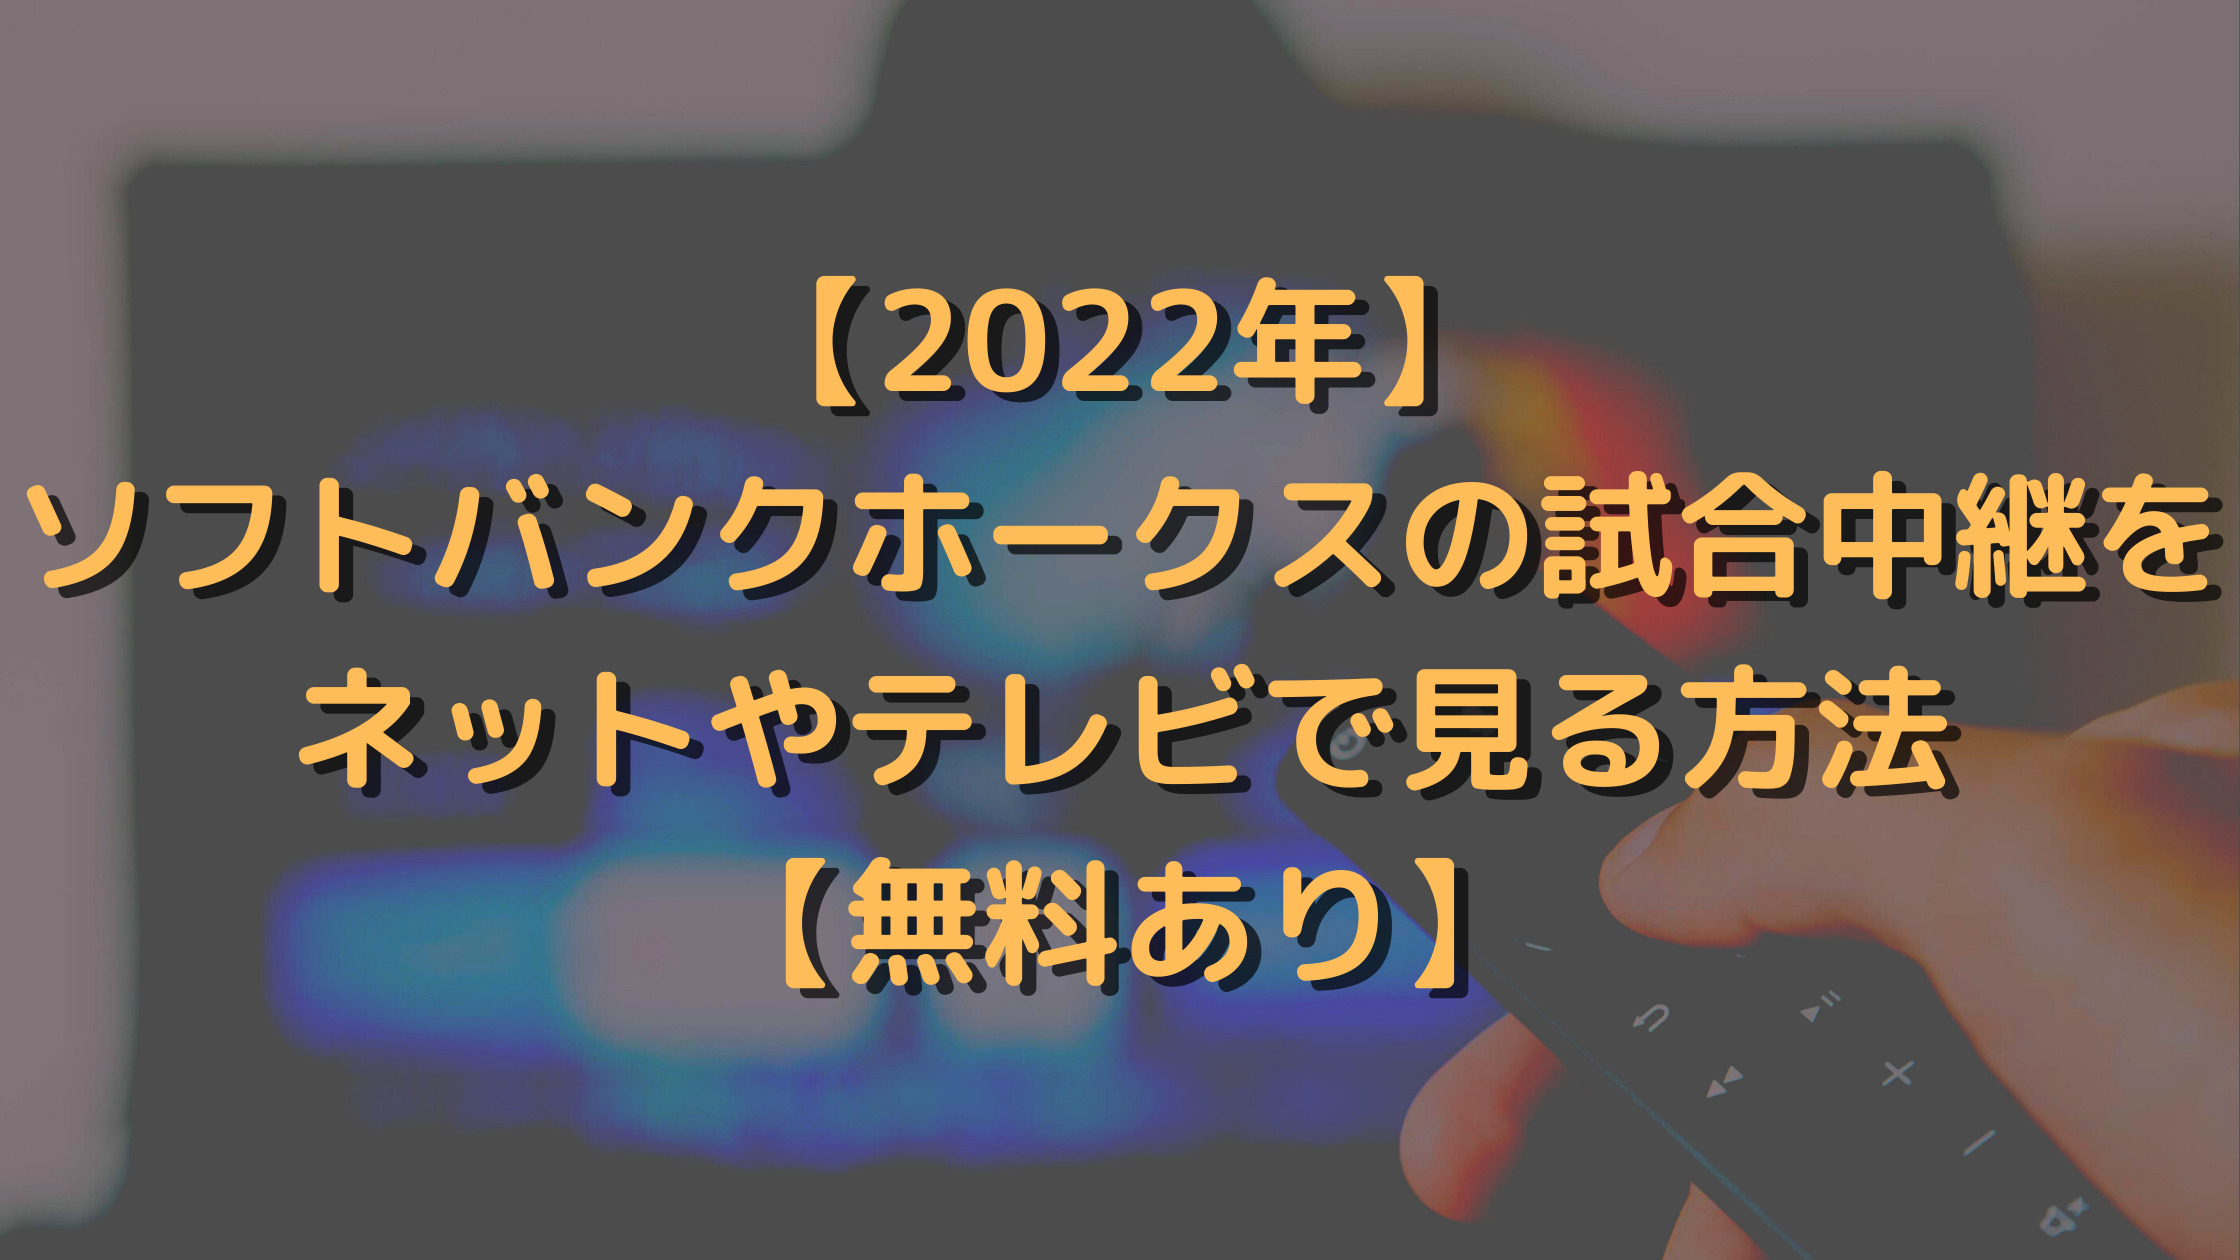 【2022年】ソフトバンクホークスの試合中継をネットやテレビで見る方法【無料あり】